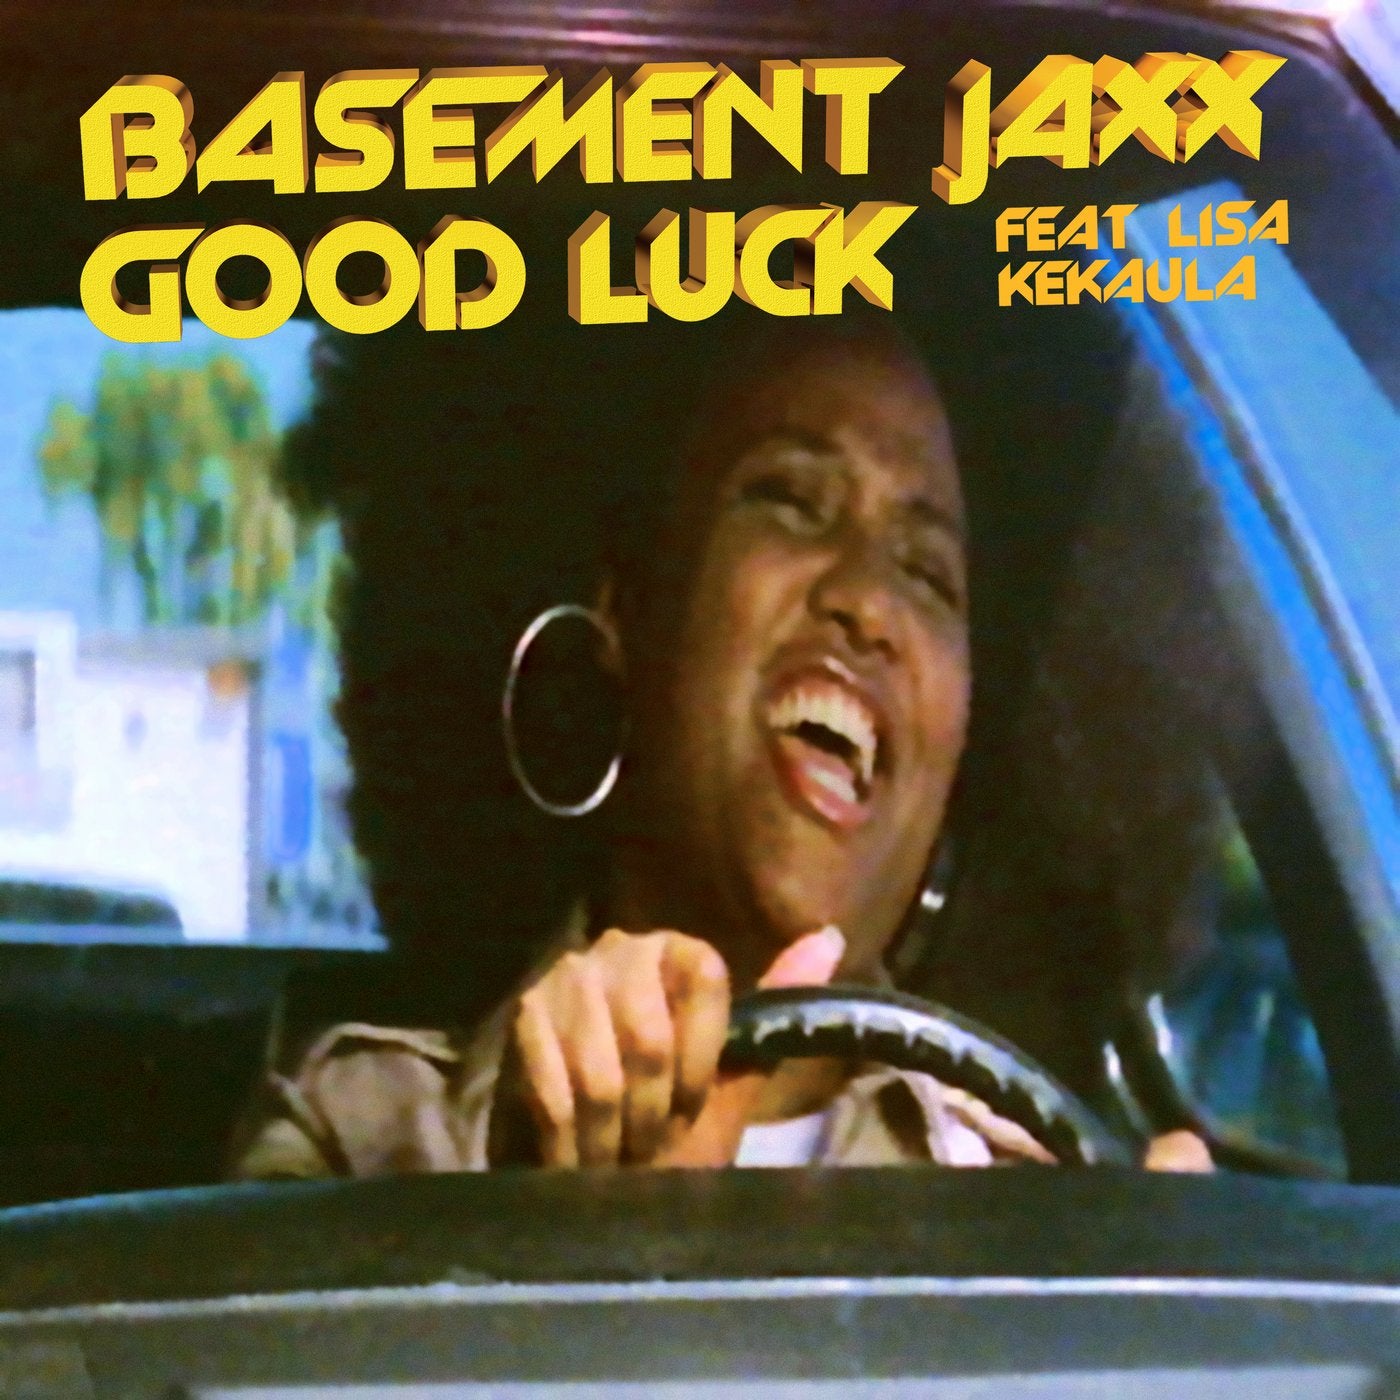 Good Luck Feat Lisa Kekaula Original Mix By Basement Jaxx